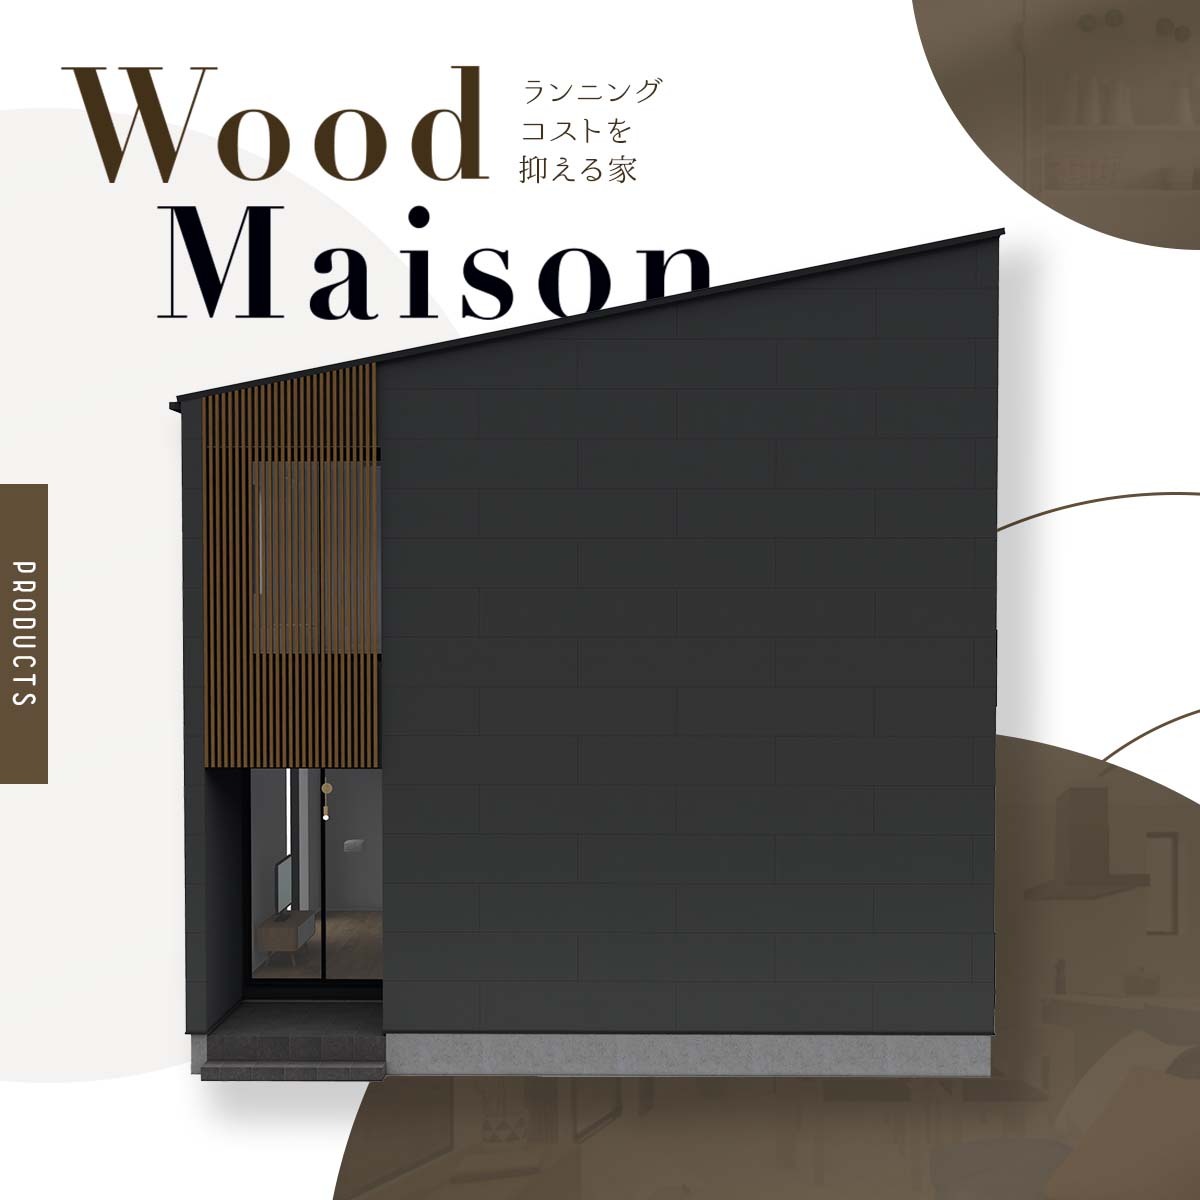 Wood Maison